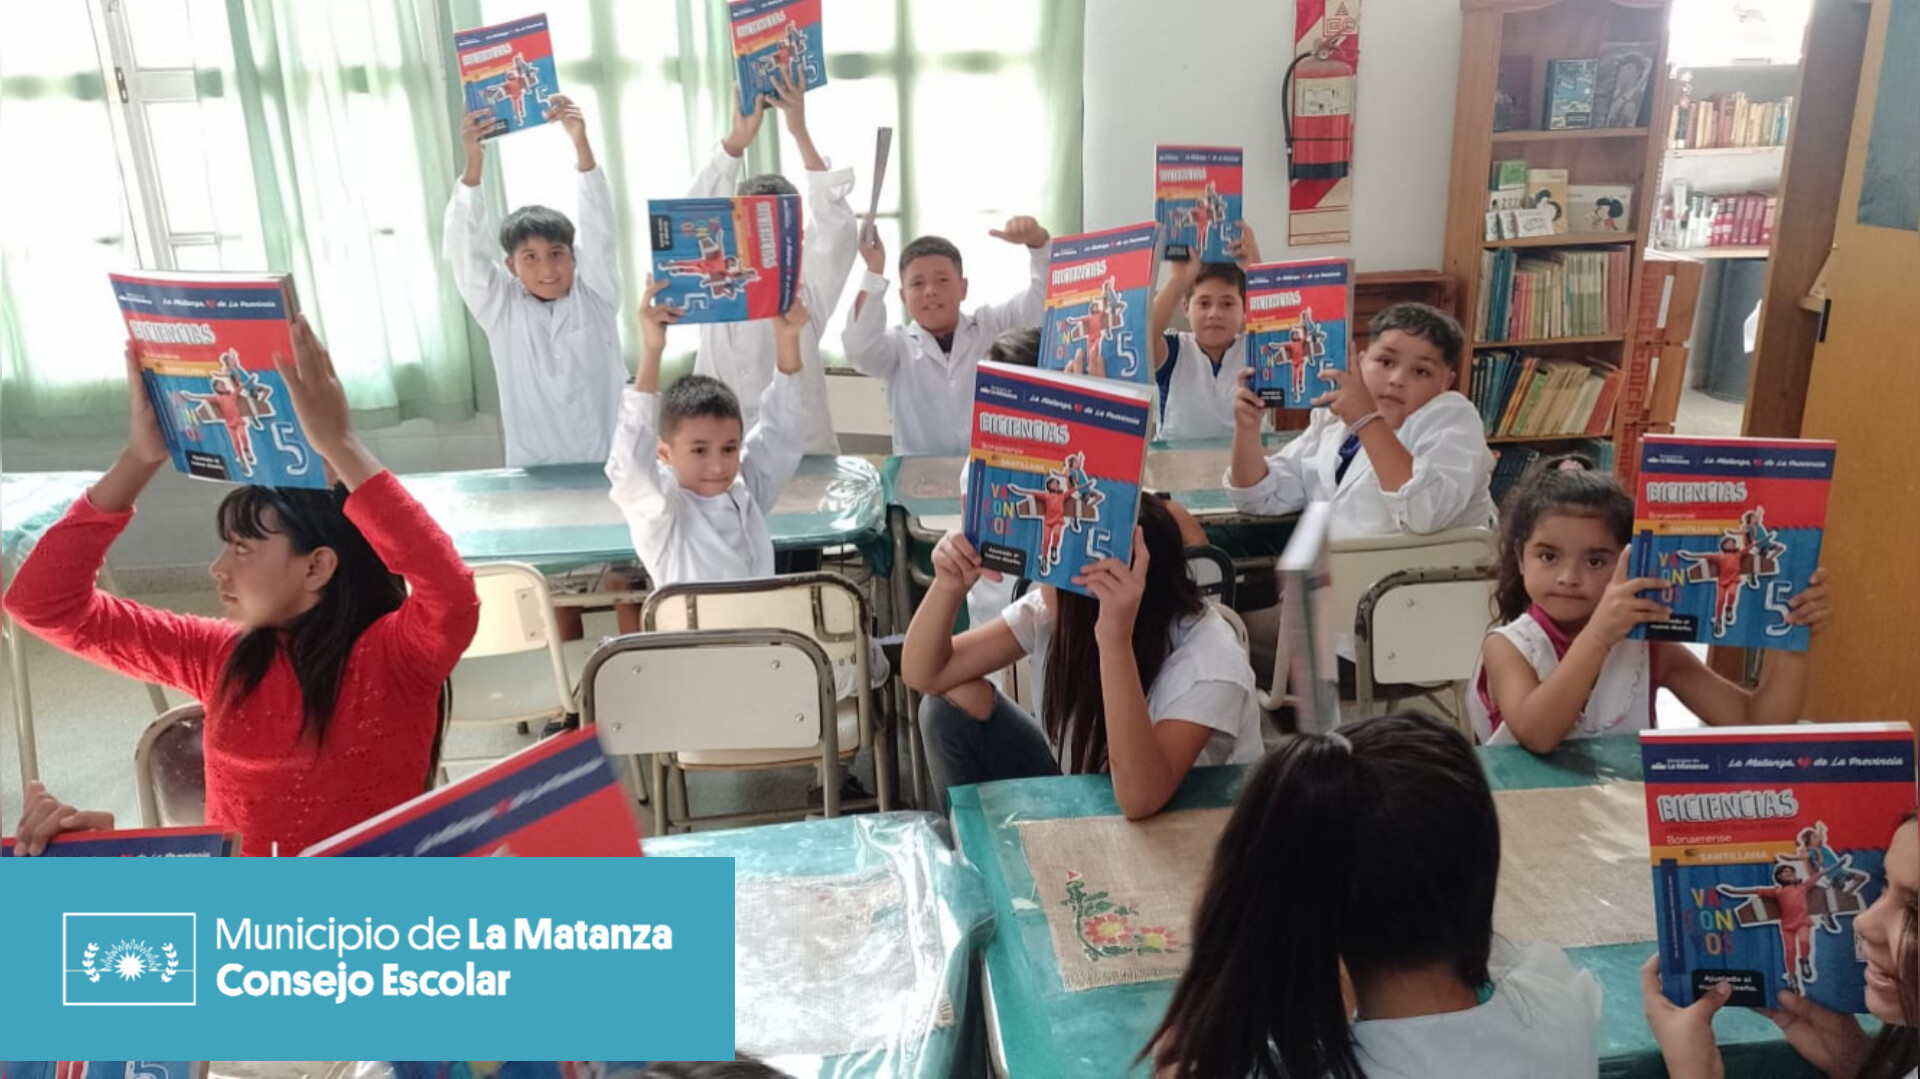 Gracias a la Gestión de nuestro Intendente Fernando Espinoza, comenzamos la entrega de libros para todos los alumnos y alumnas de las escuelas de La Matanza, reafirmando su compromiso con la educación pública. 